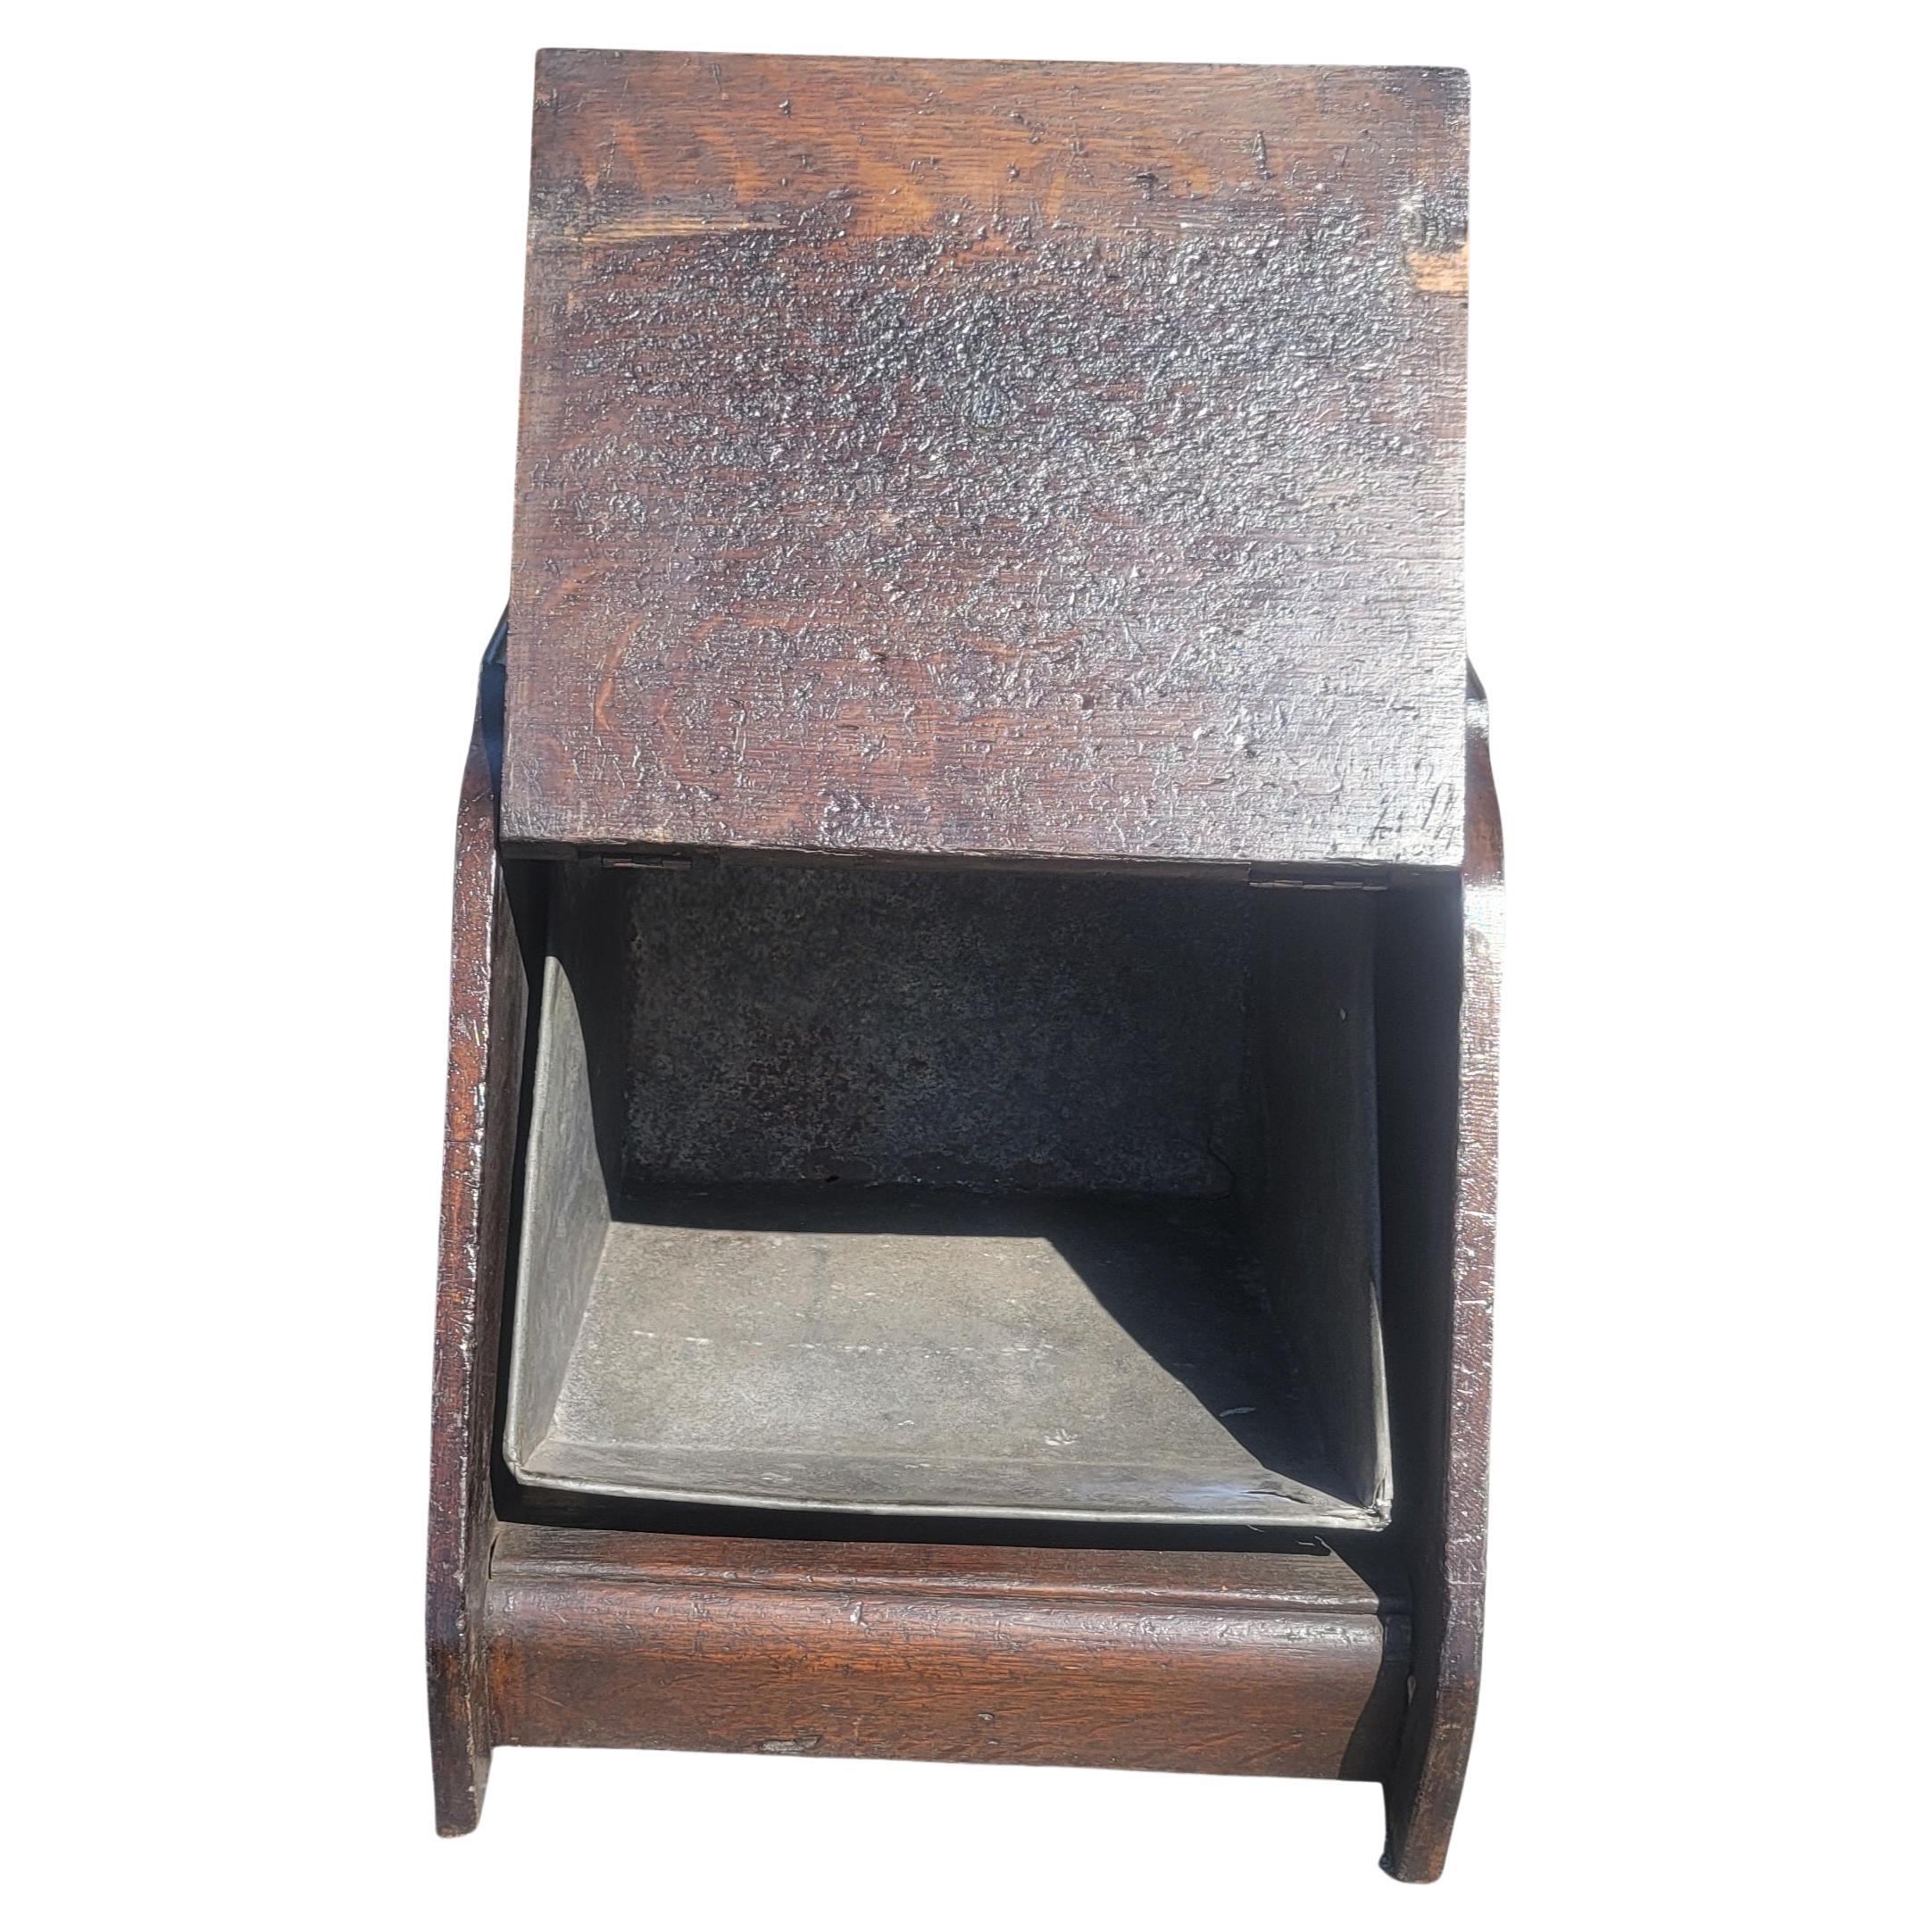 Scottish Antique Oak Coal Scuttle Box, Circa 1890s